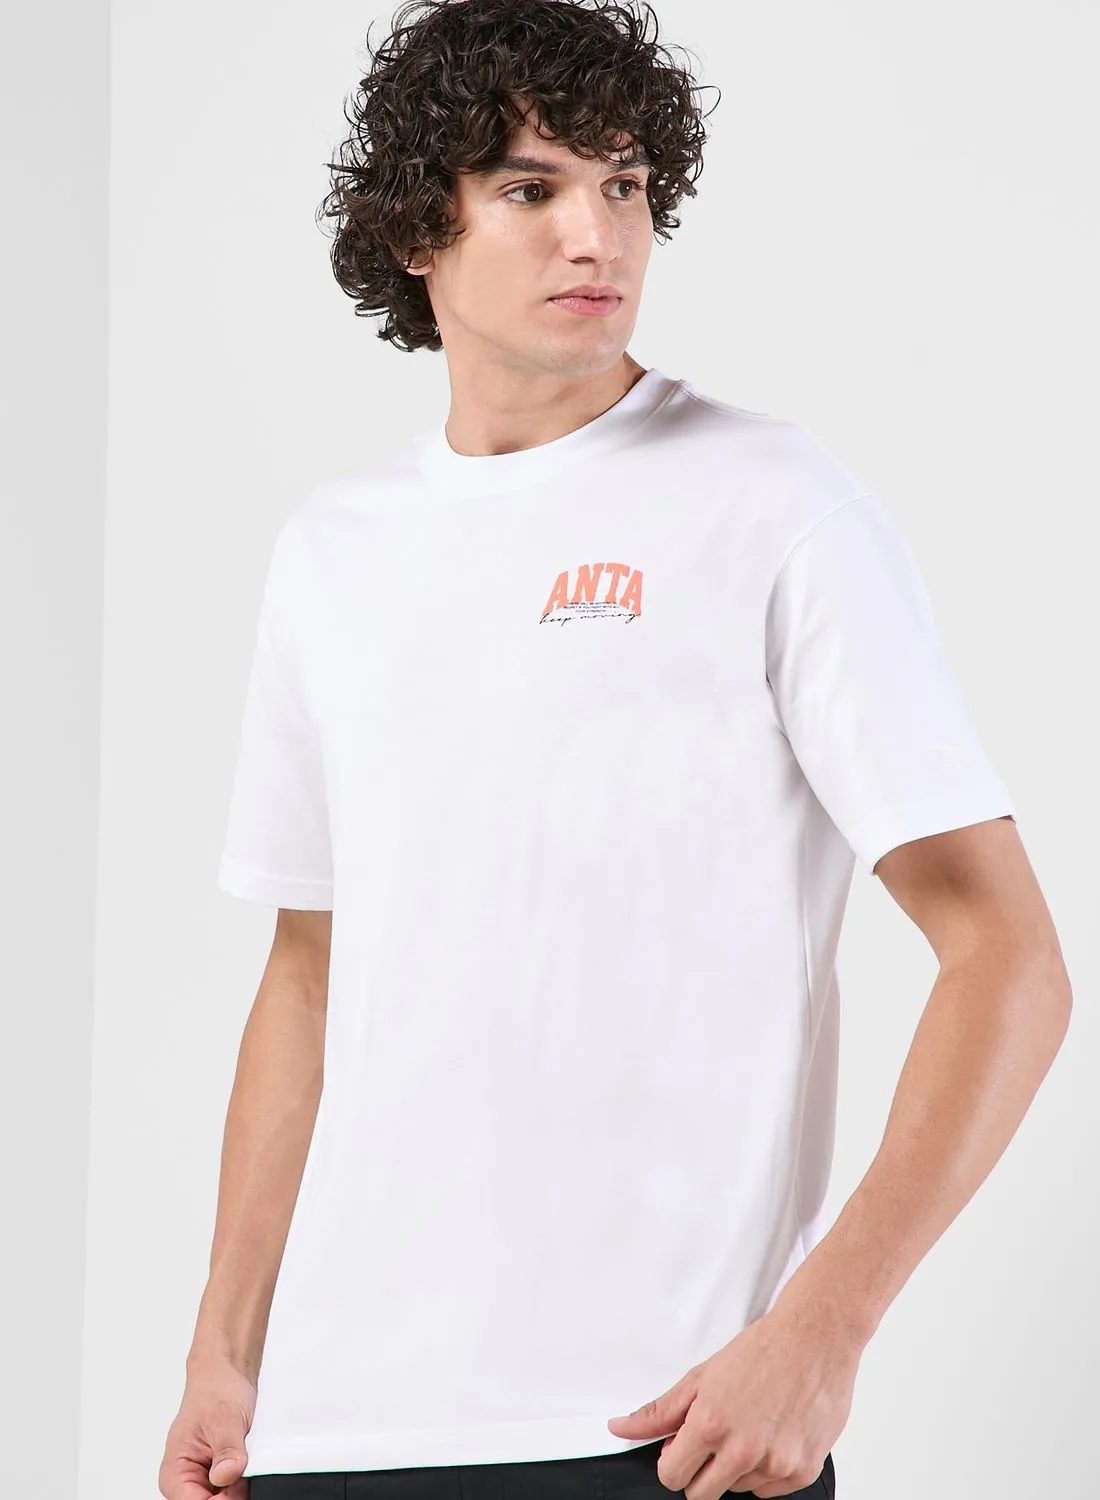 ANTA Smiley Printed T-Shirt